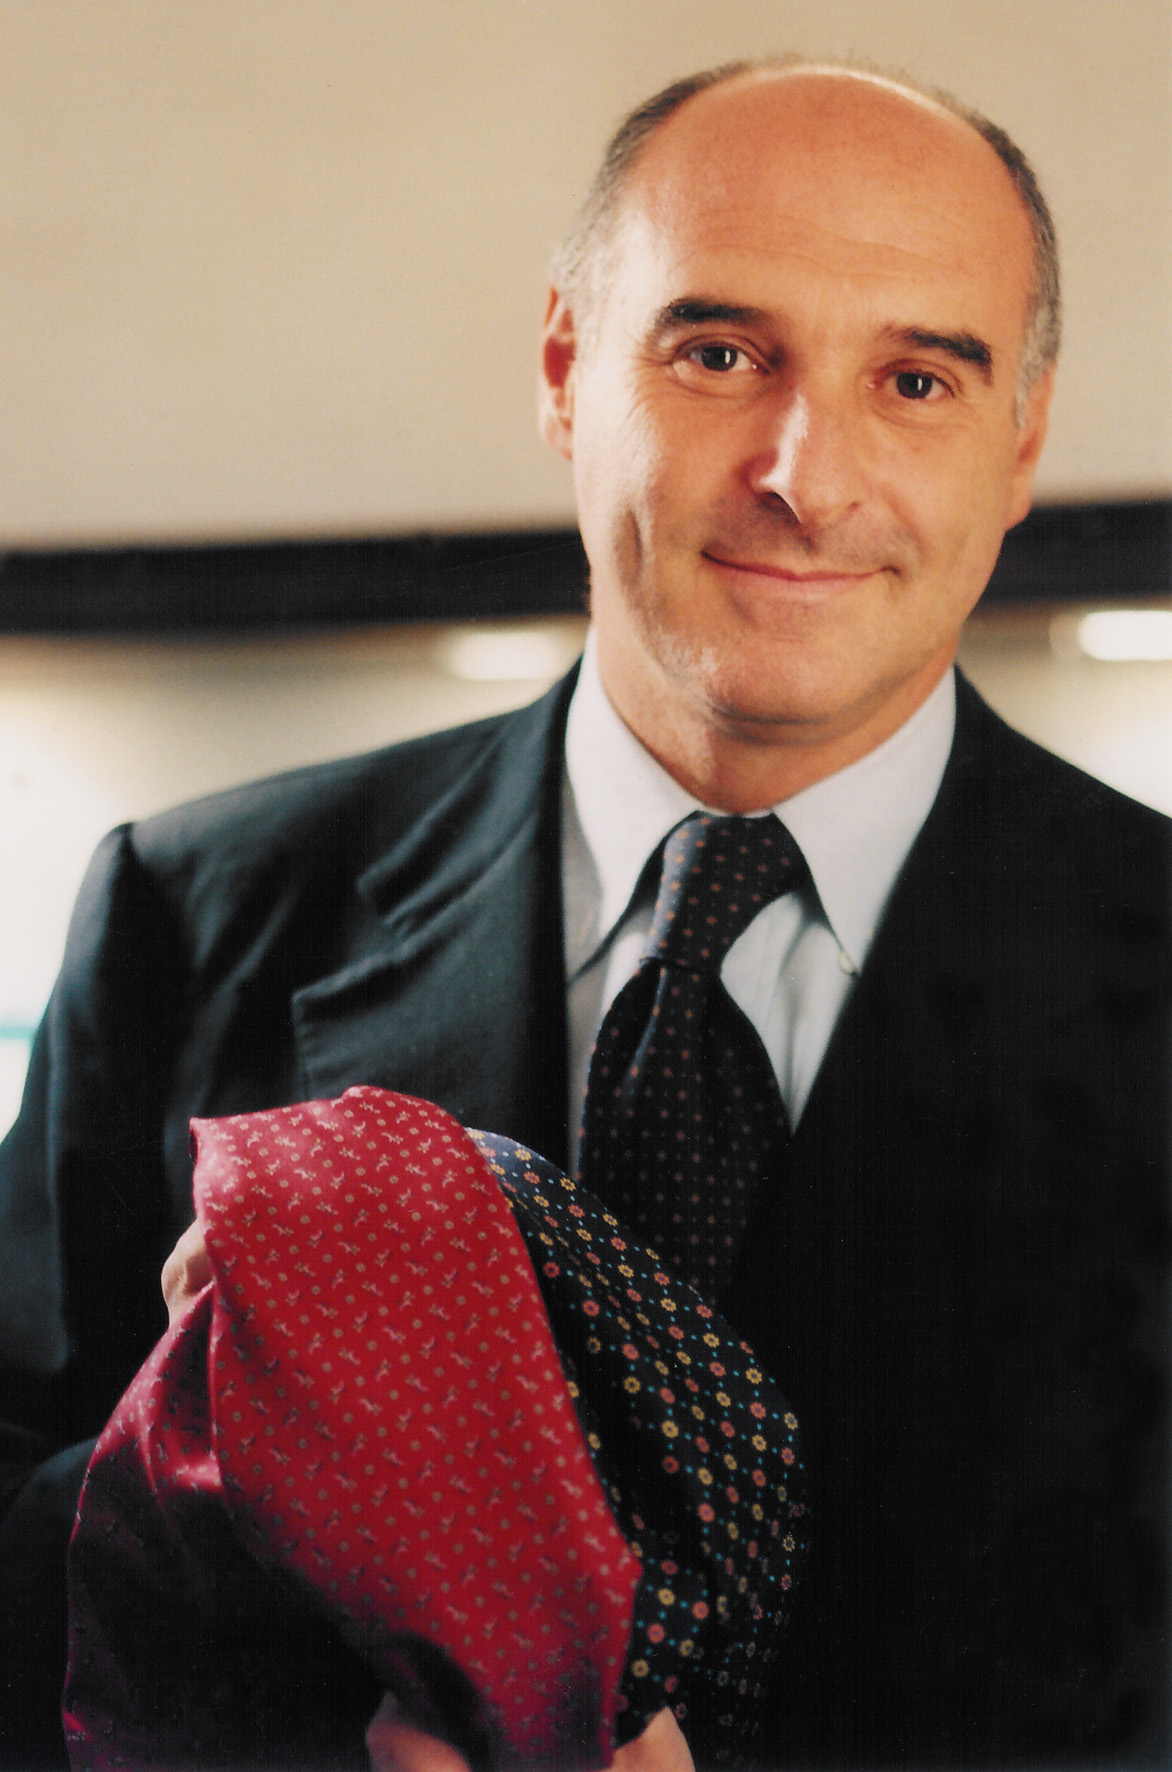 Cravatte di classe E.Marinella: qualità, manifattura artigianale e tradizione familiare [INTERVISTA]